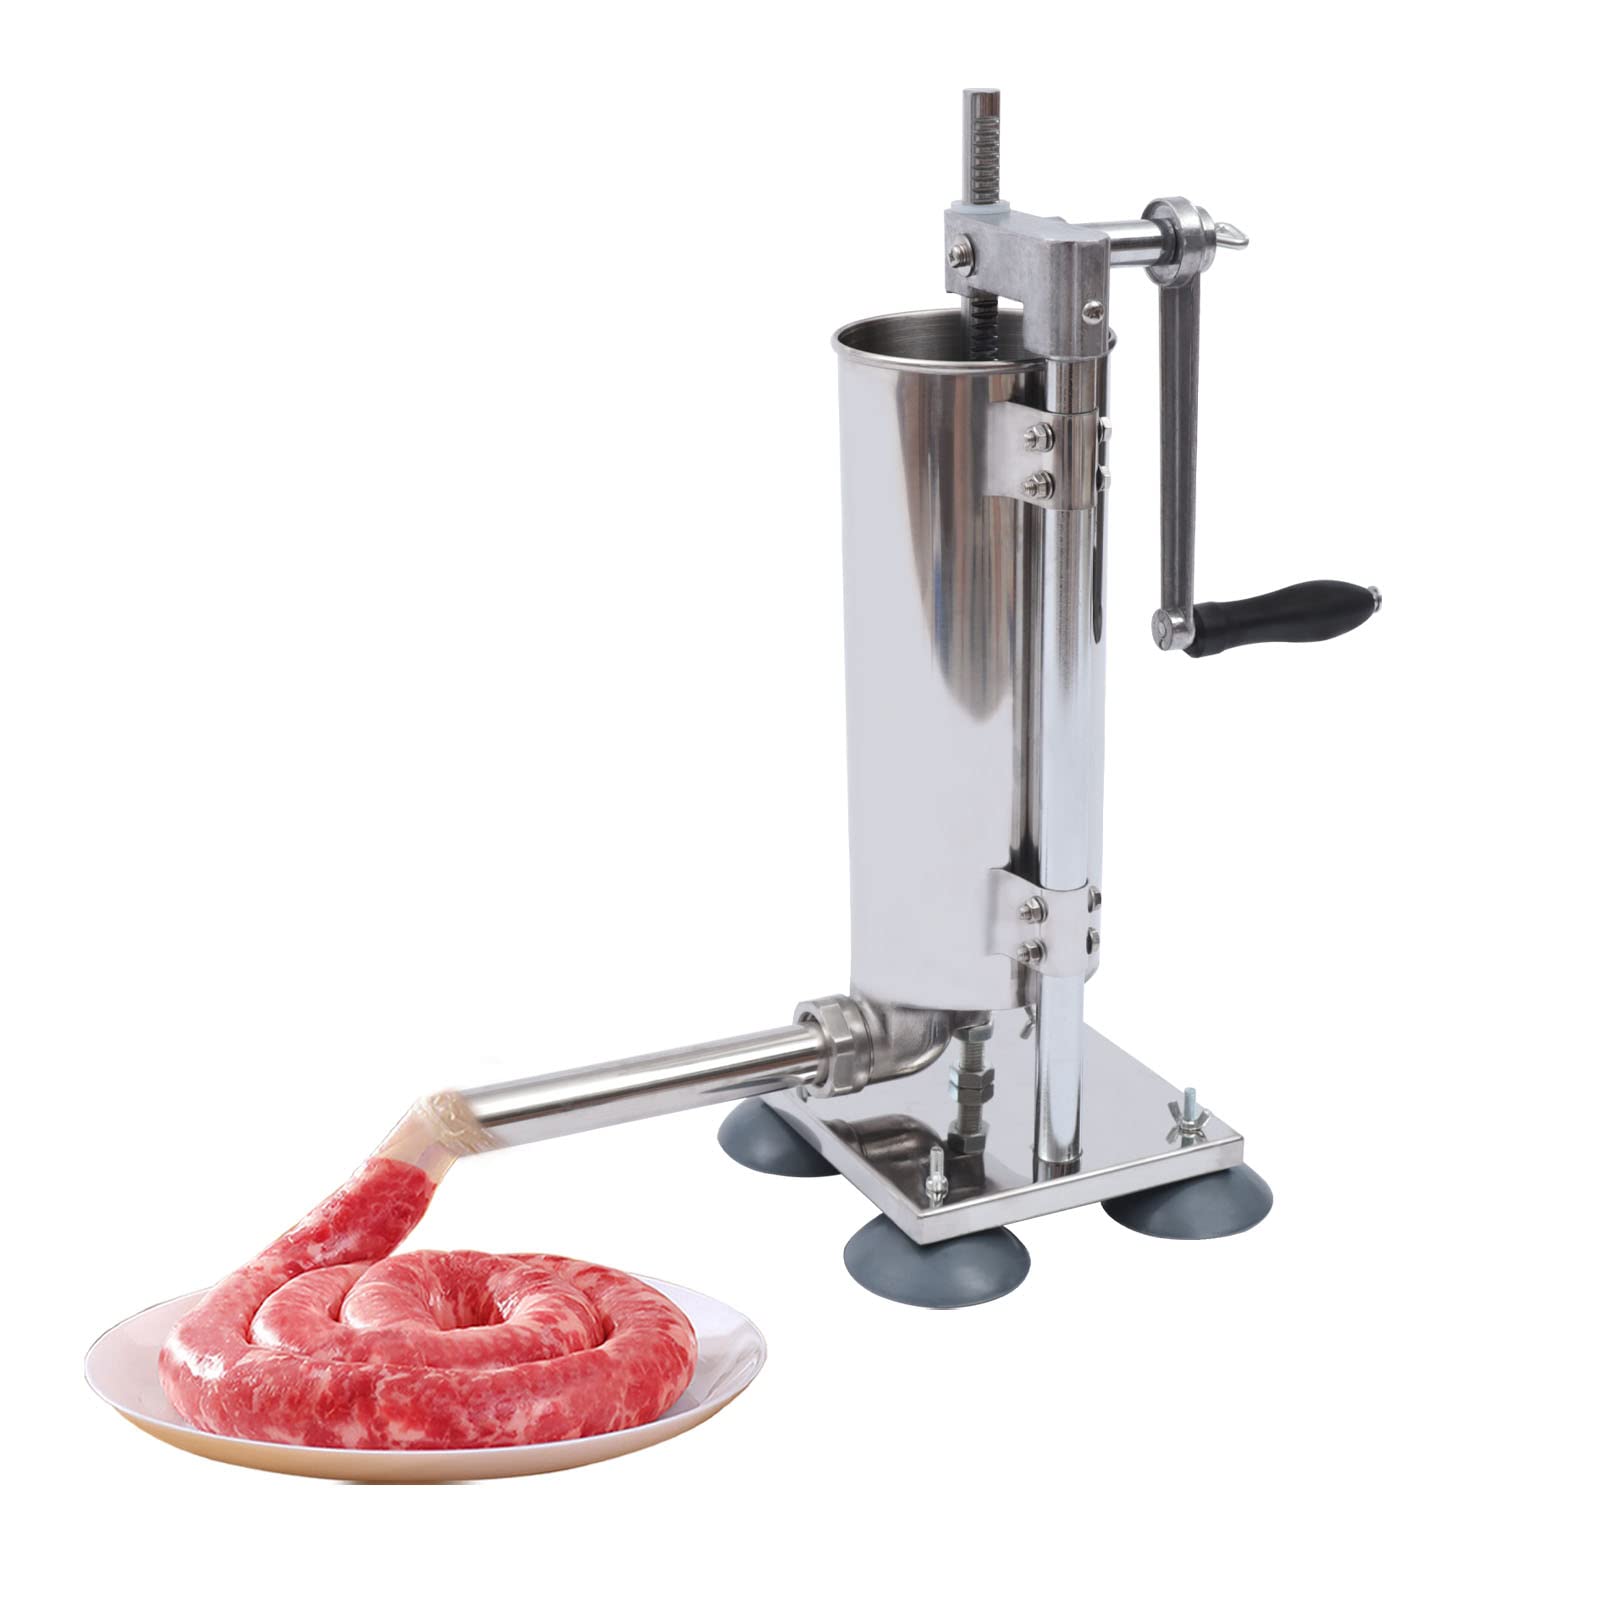 Sausage Stuffer Machine - Riempitrice manuale per salsicce